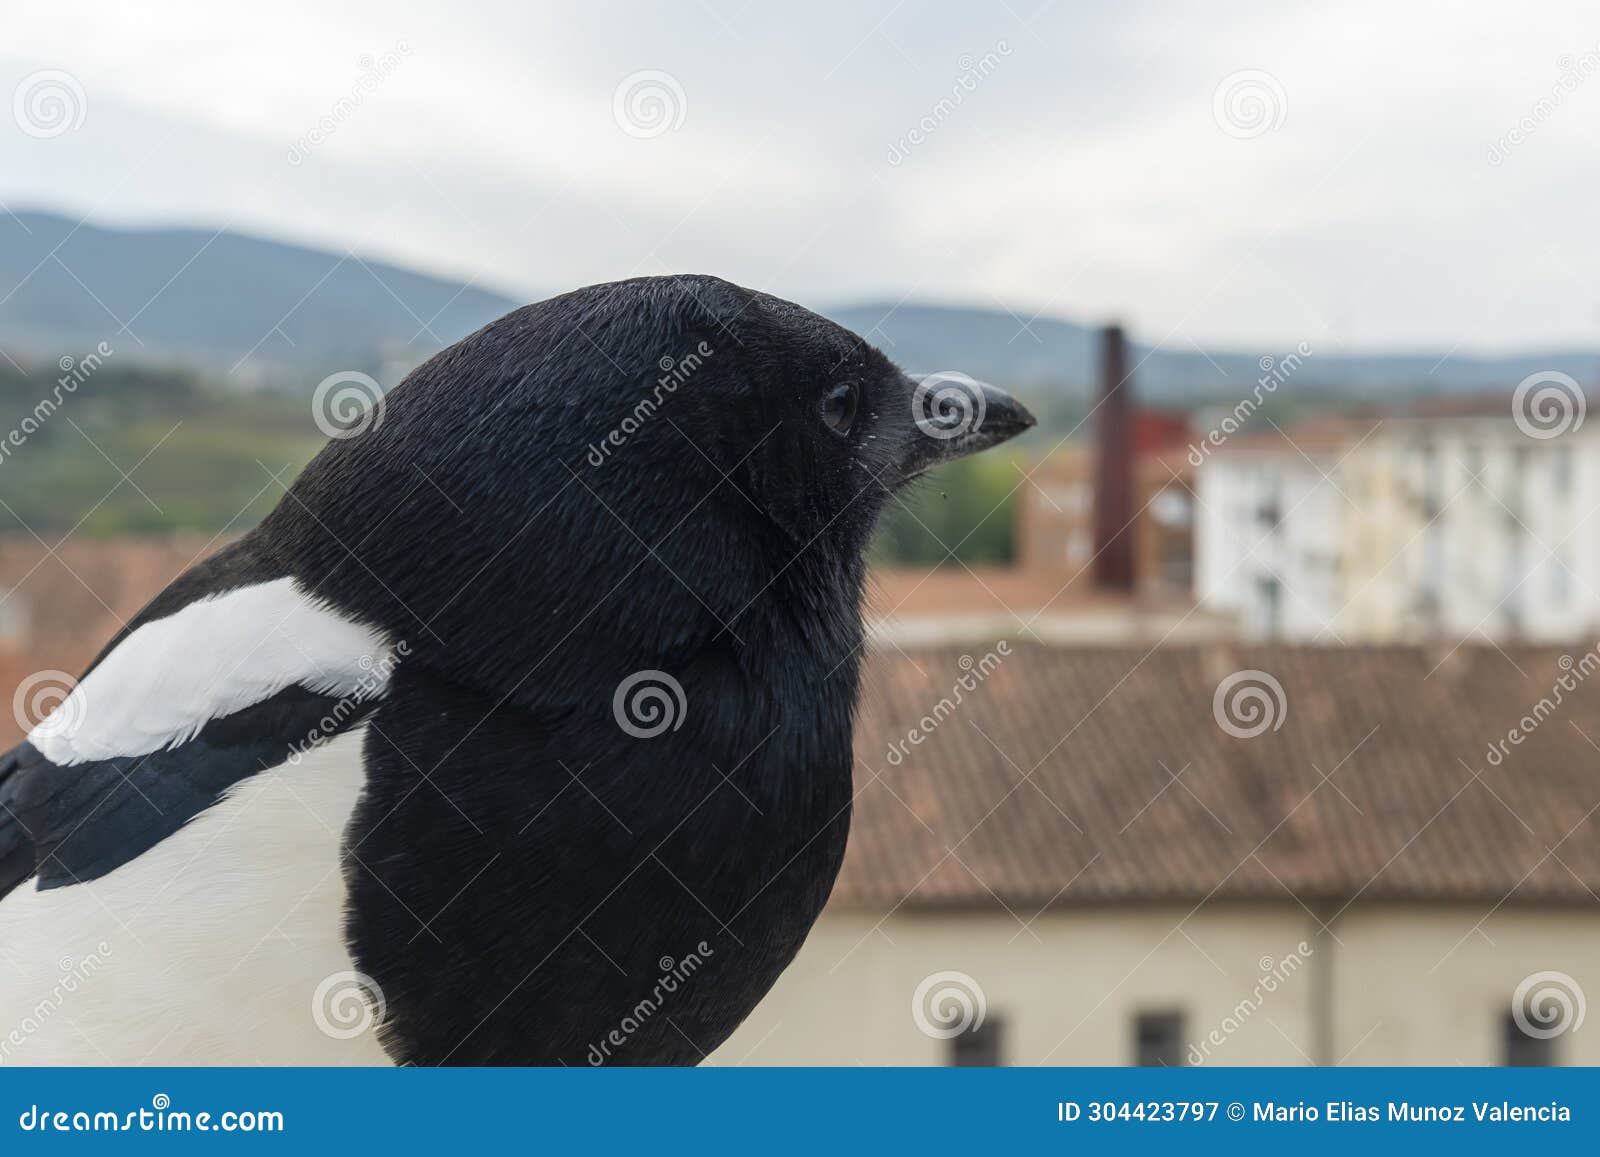 smart eurasian magpie (pica pica) posando para la camara en una cornisa de piedra. young beautiful intelligent raven